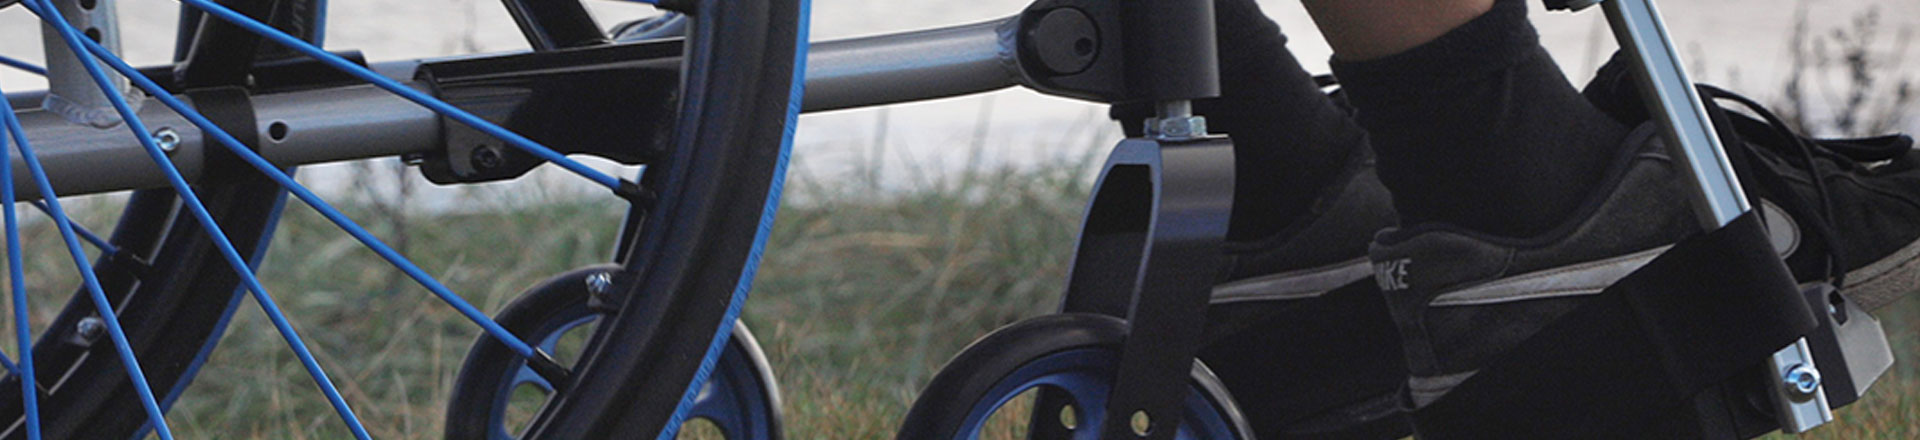 Fauteuils roulants/ Accessoires pour fauteuils roulants